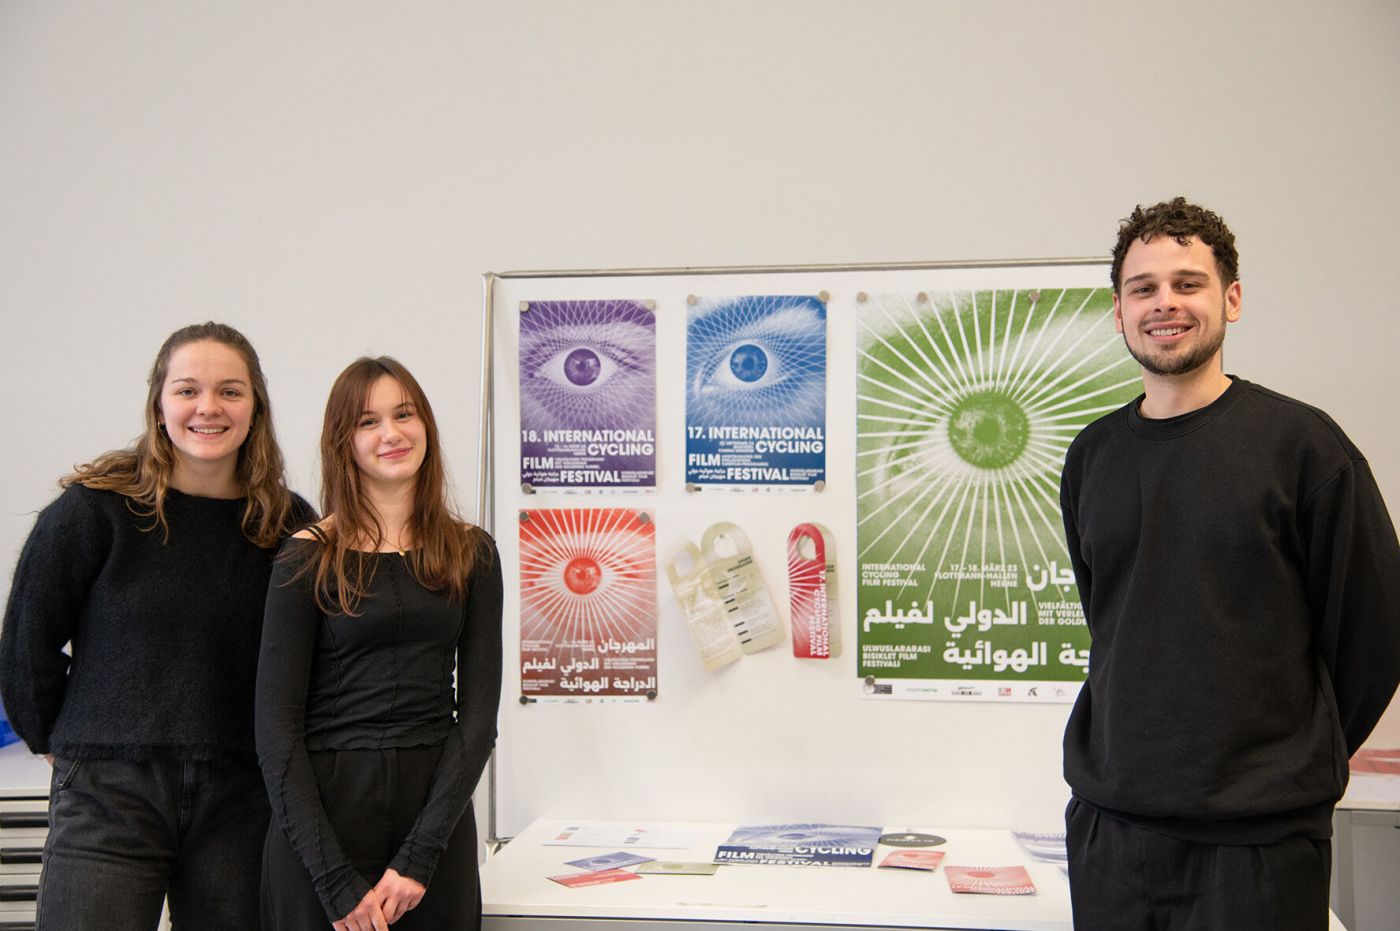 Caroline Krob, Marie Hansen und Tim Höltje vor Plakaten und Flyern ihrer Kampagne